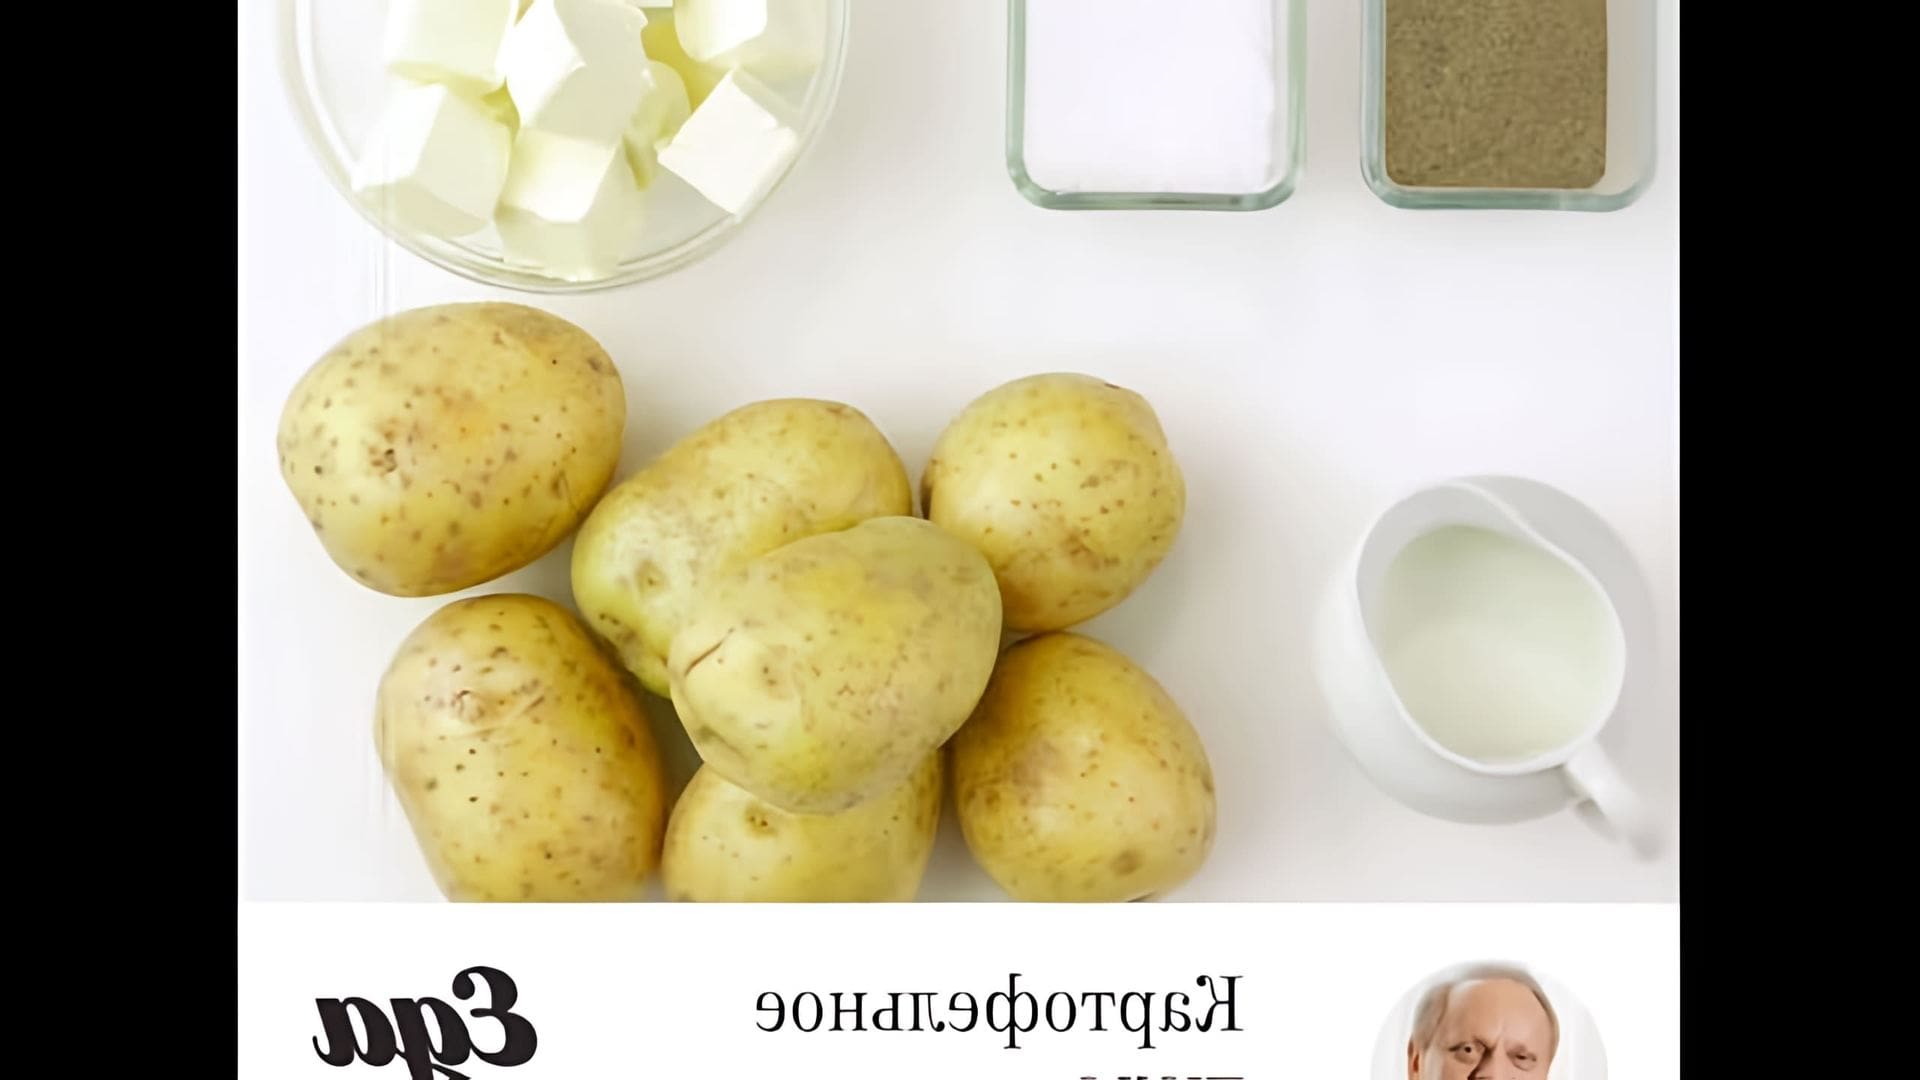 Картофельное пюре Жоэля Робюшона - это видео-ролик, который демонстрирует процесс приготовления знаменитого блюда от известного шеф-повара Жоэля Робюшона